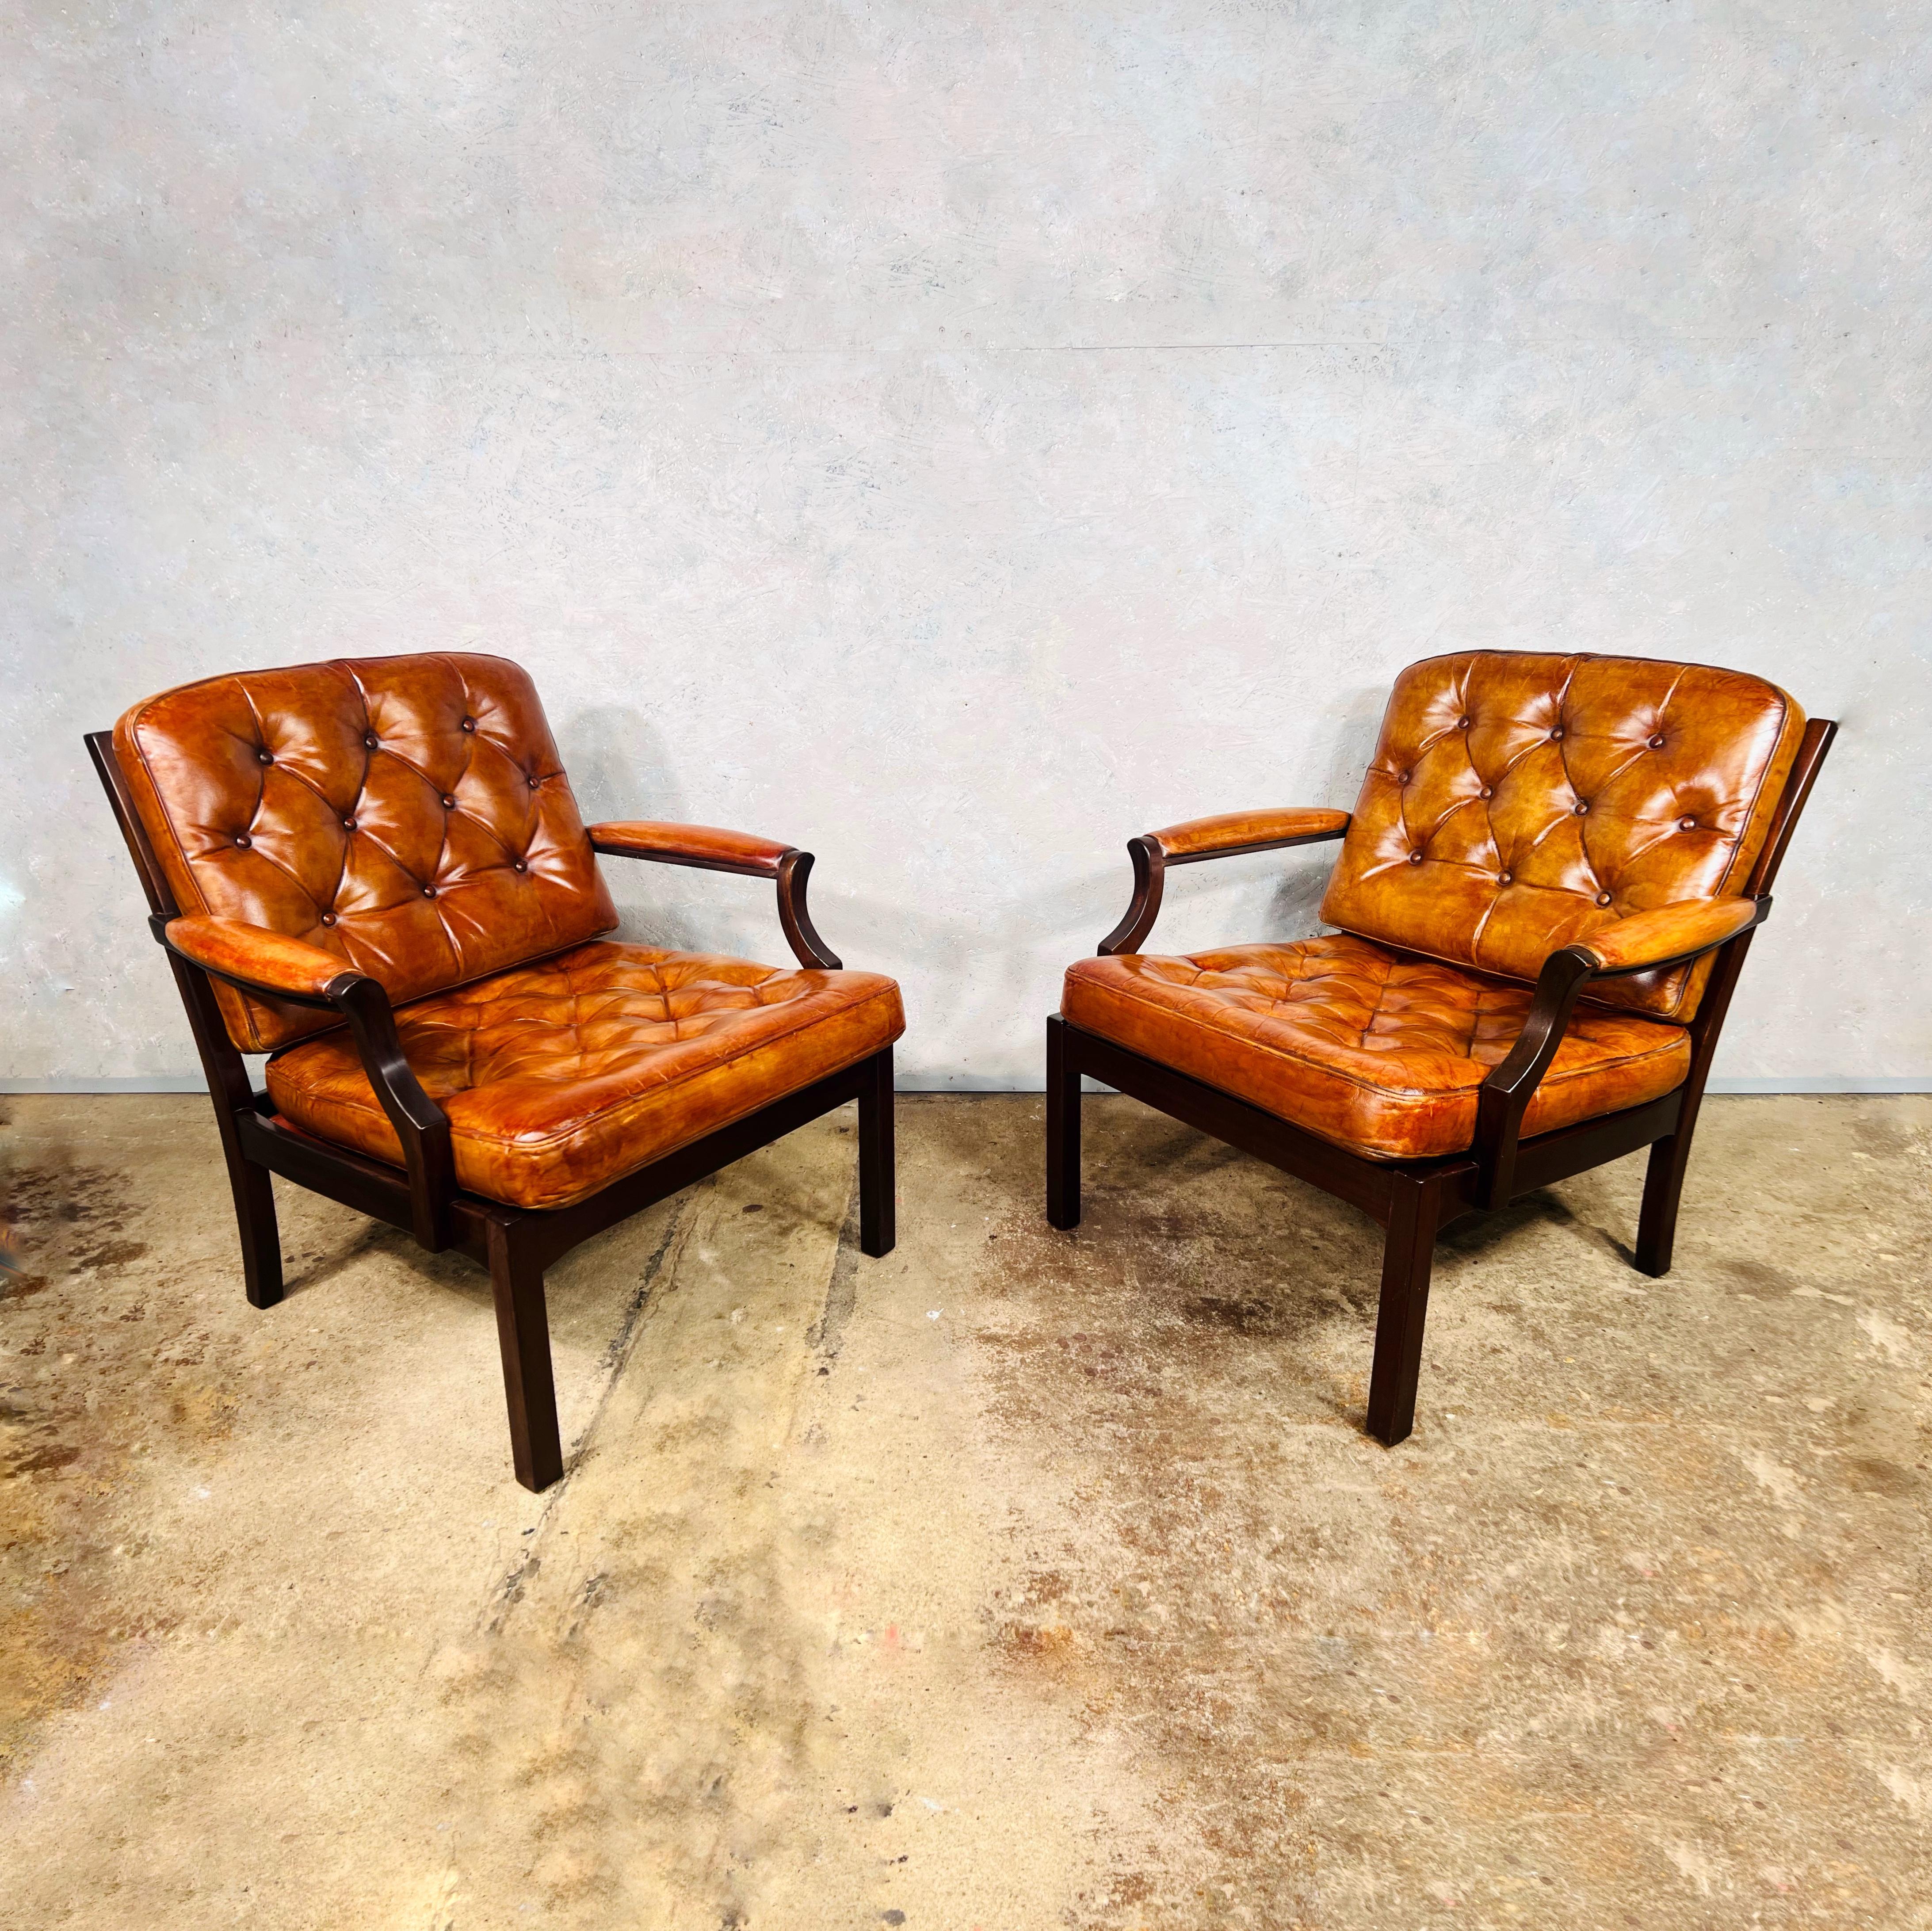 Elegante paire de fauteuils vintage en cuir danois, avec coussins entièrement boutonnés et structure en hêtre massif. 

Design/One très confortable, proportions compactes et soignées.

Le cuir est teint à la main dans une très belle couleur feu